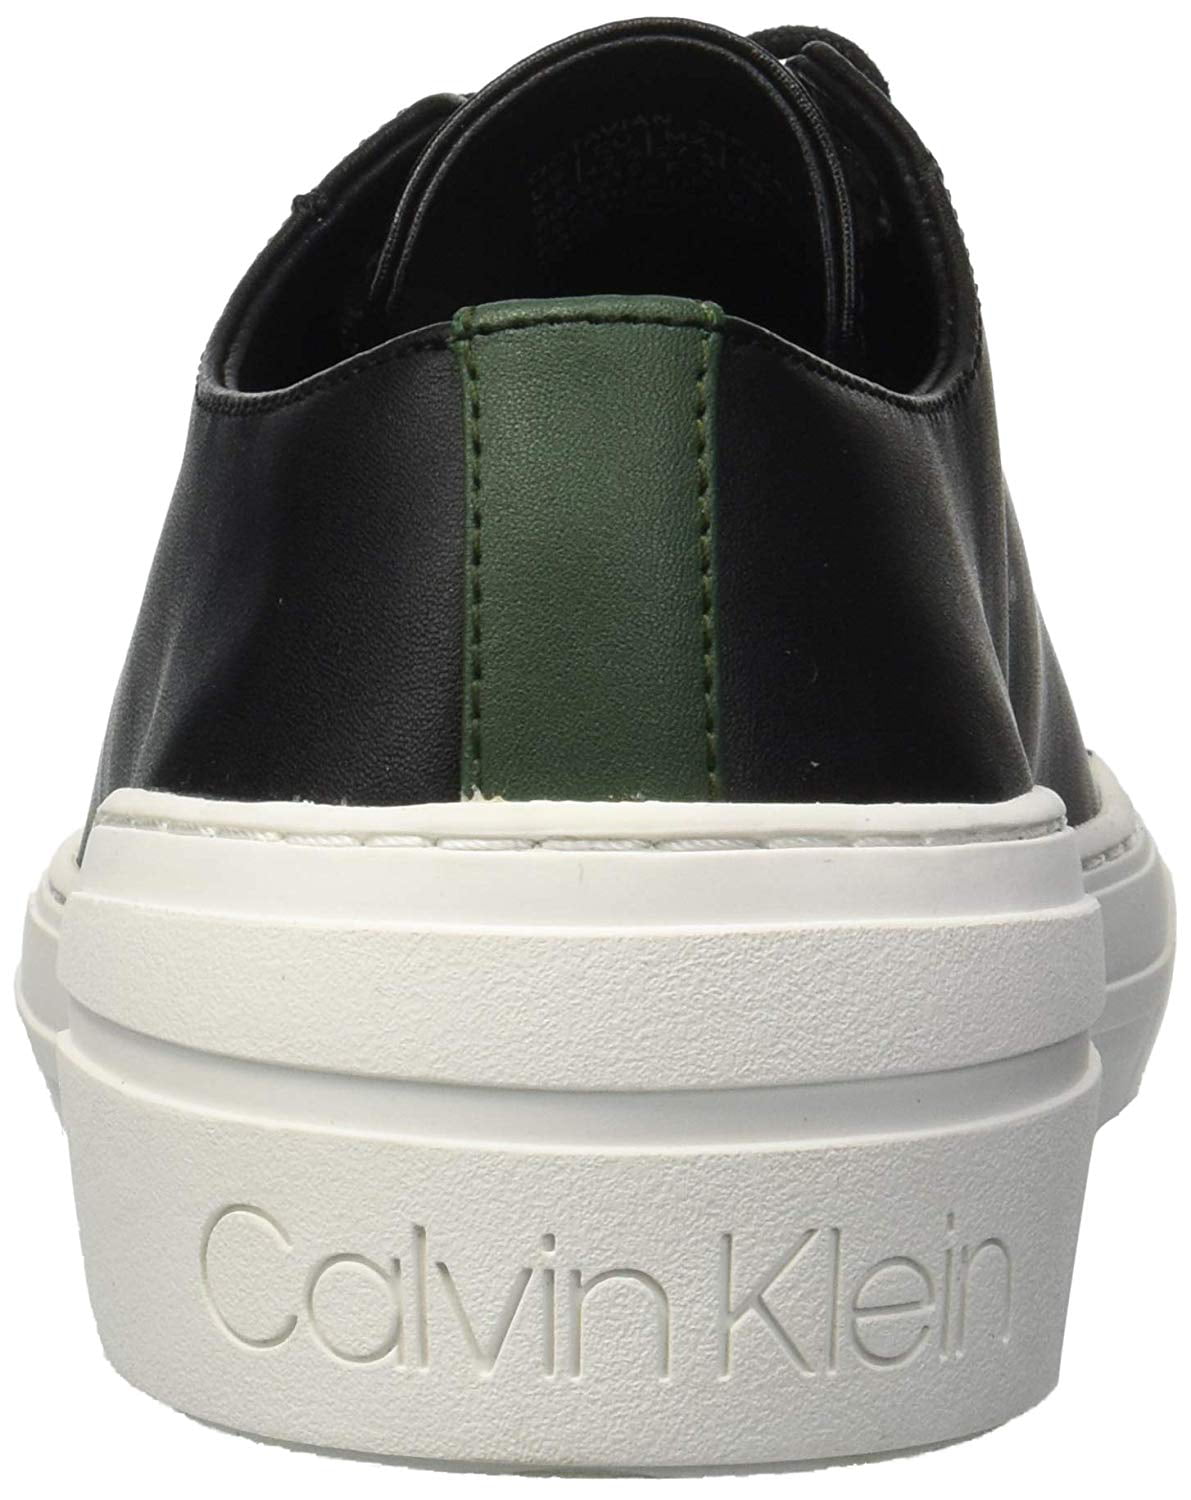 Calvin Klein Men's Octavian Smooth Calf 